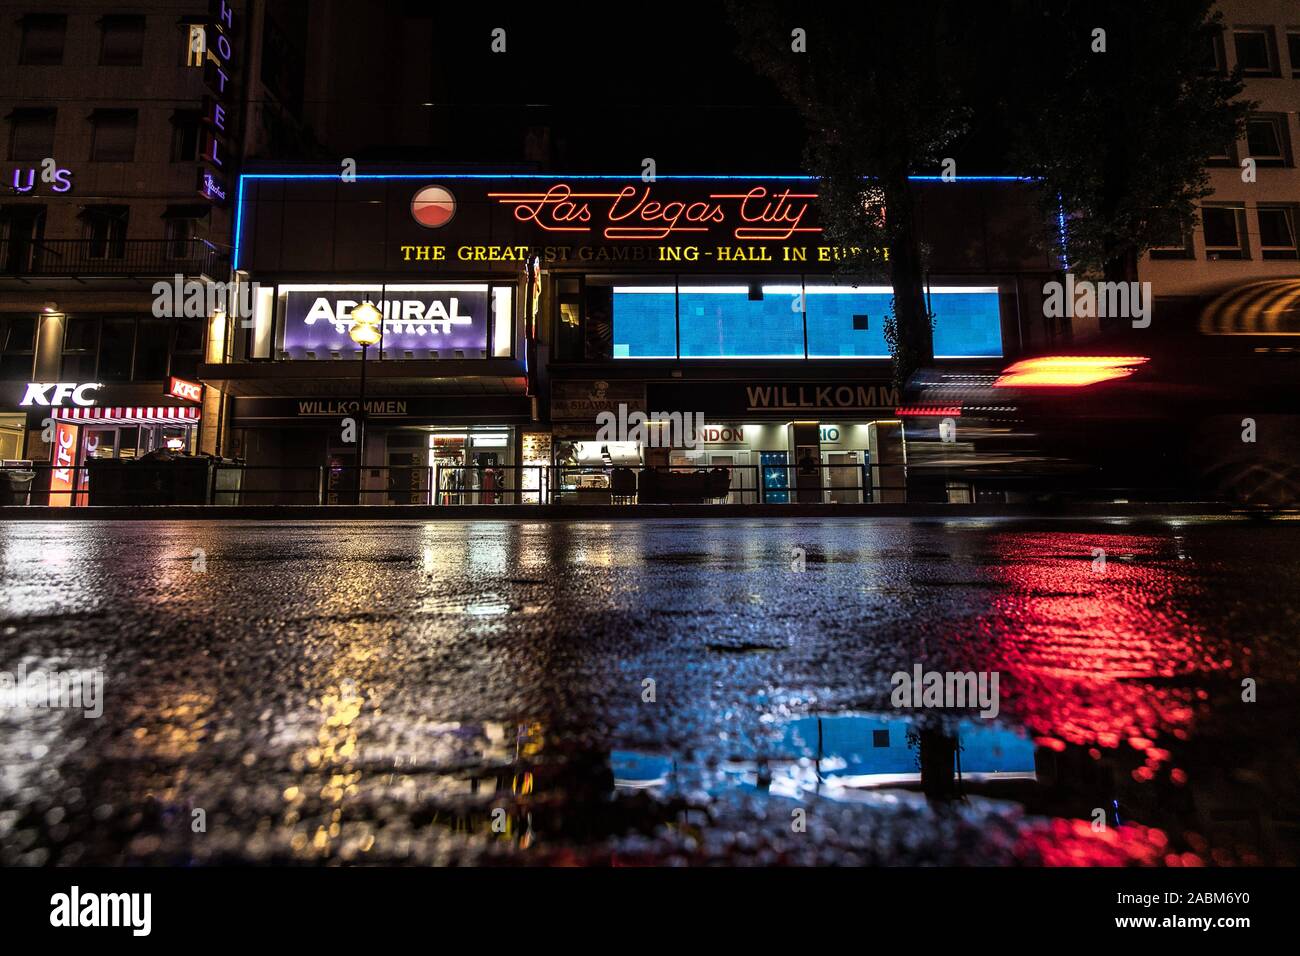 Das Casino Las Vegas City - Die größte Spielhalle in Europa" an der  Bayerstraße 9 in München. In der Nacht und im Regen fotografiert.  [Automatisierte Übersetzung] Stockfotografie - Alamy